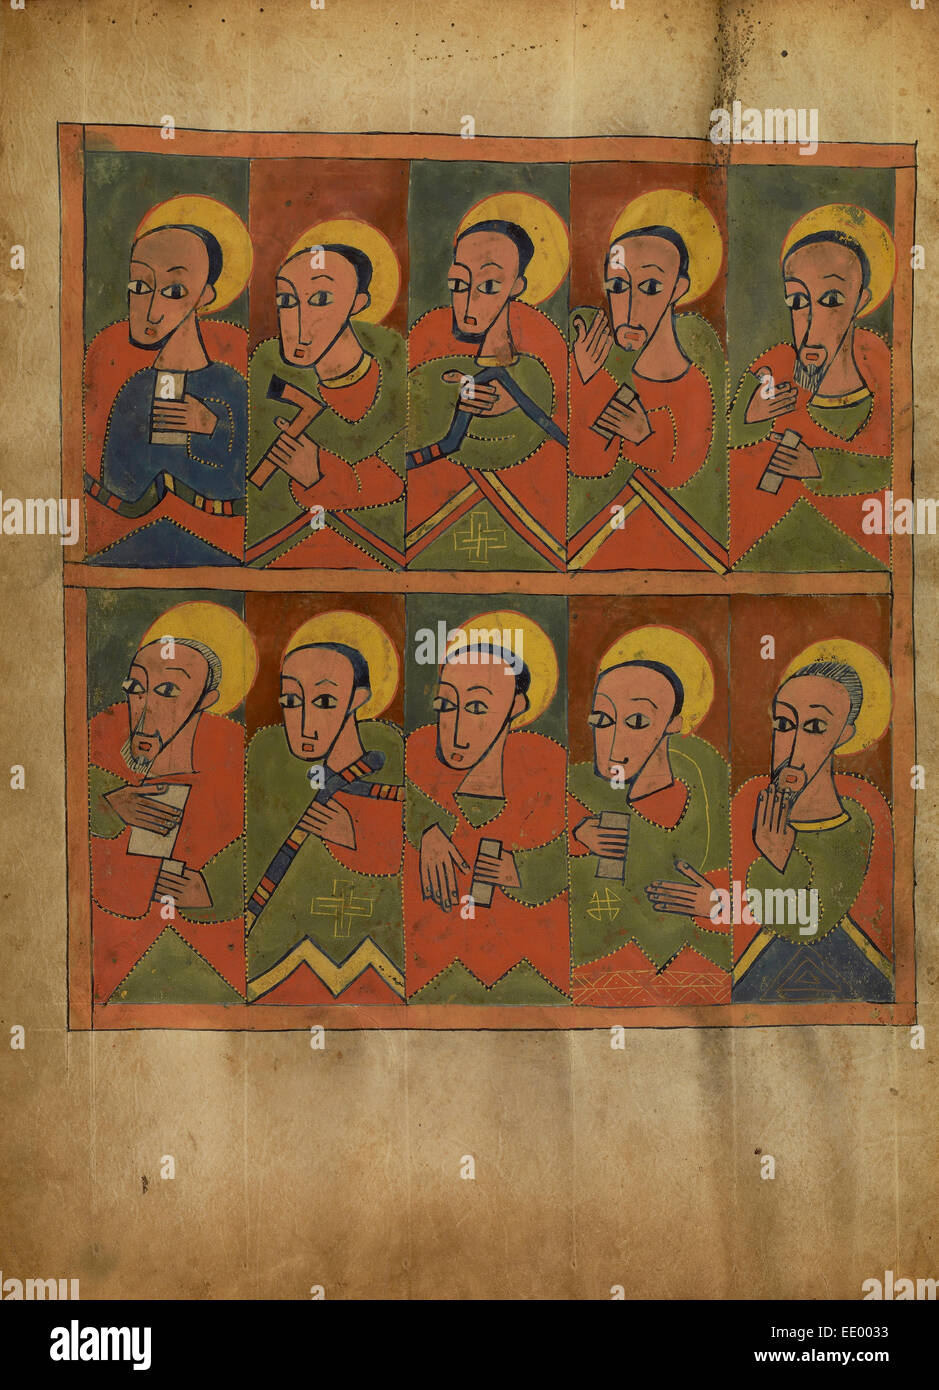 Die zweiundsiebzig jünger; Unbekannt; Äthiopien, Afrika; etwa 1480-1520; Tempera auf Pergament Stockfoto